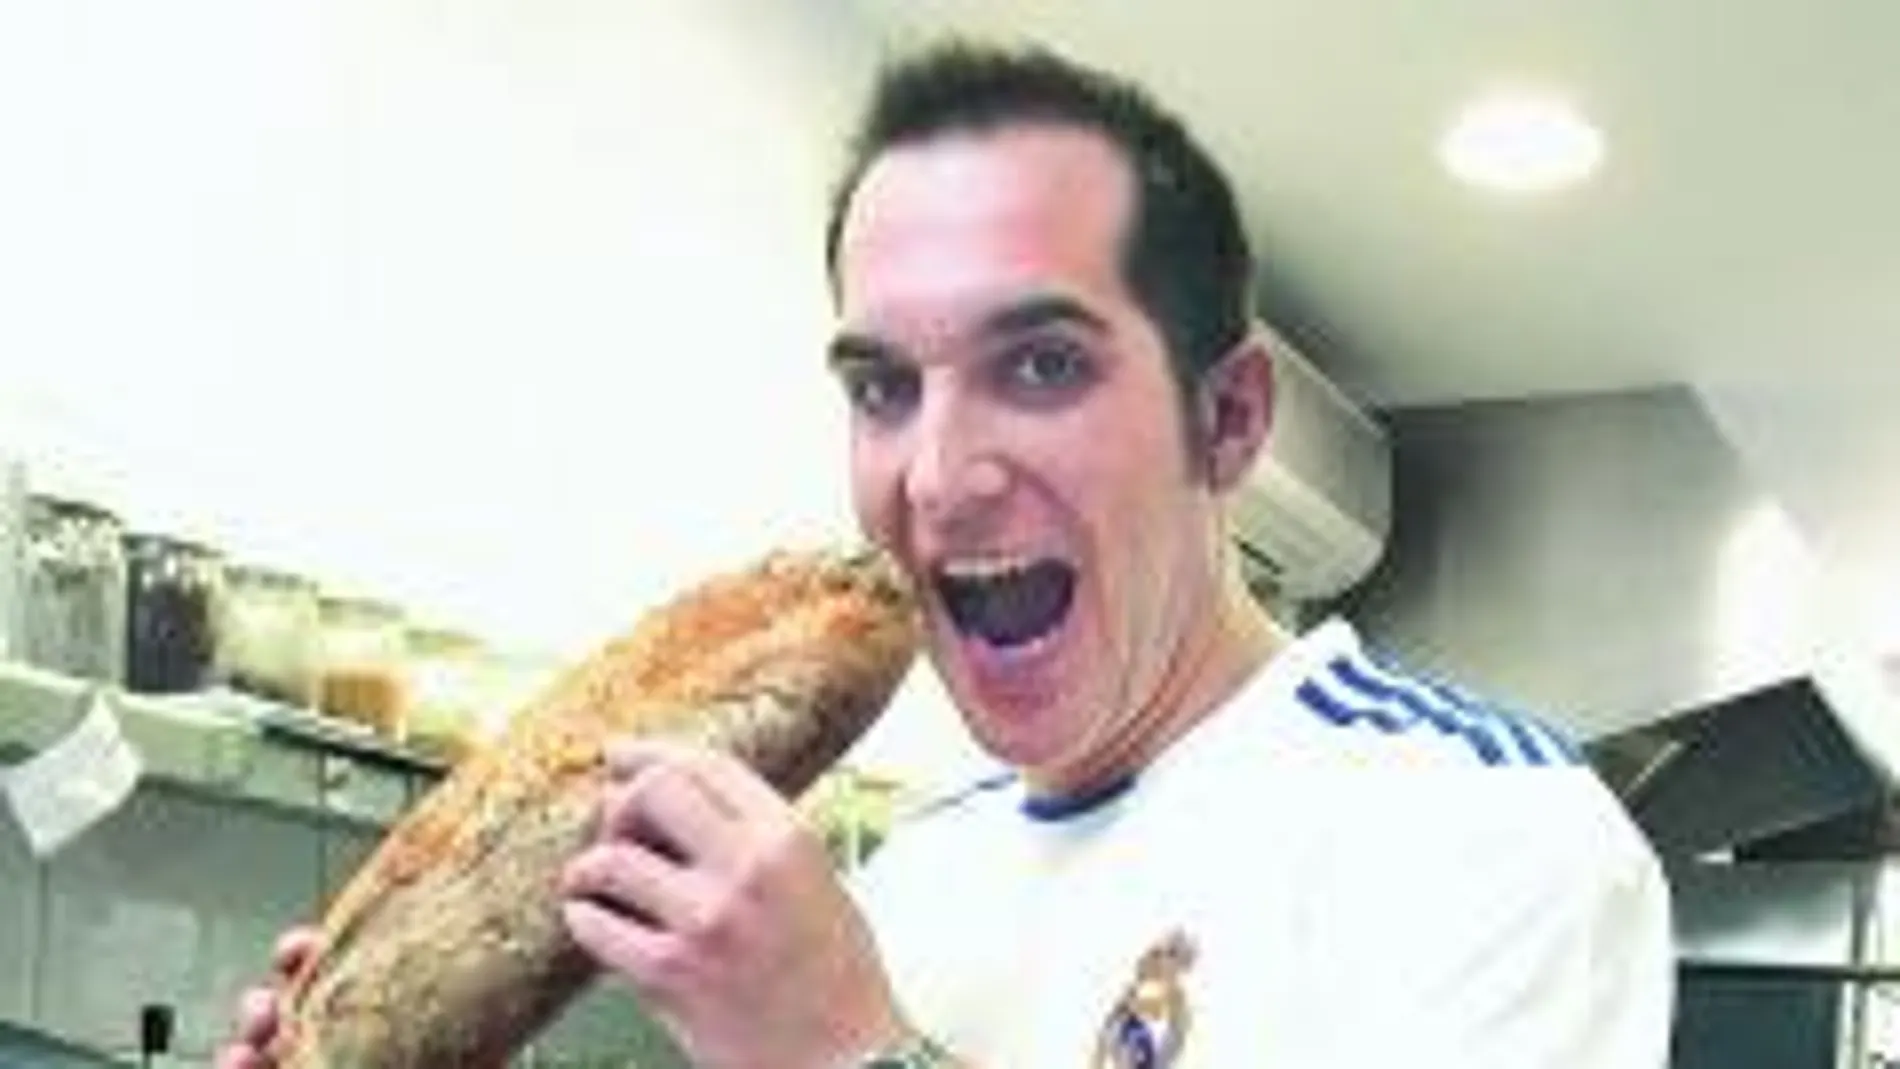 Mario Sandoval cocinero, no duda en ponerse la camiseta del Real Madrid para el partido de mañana